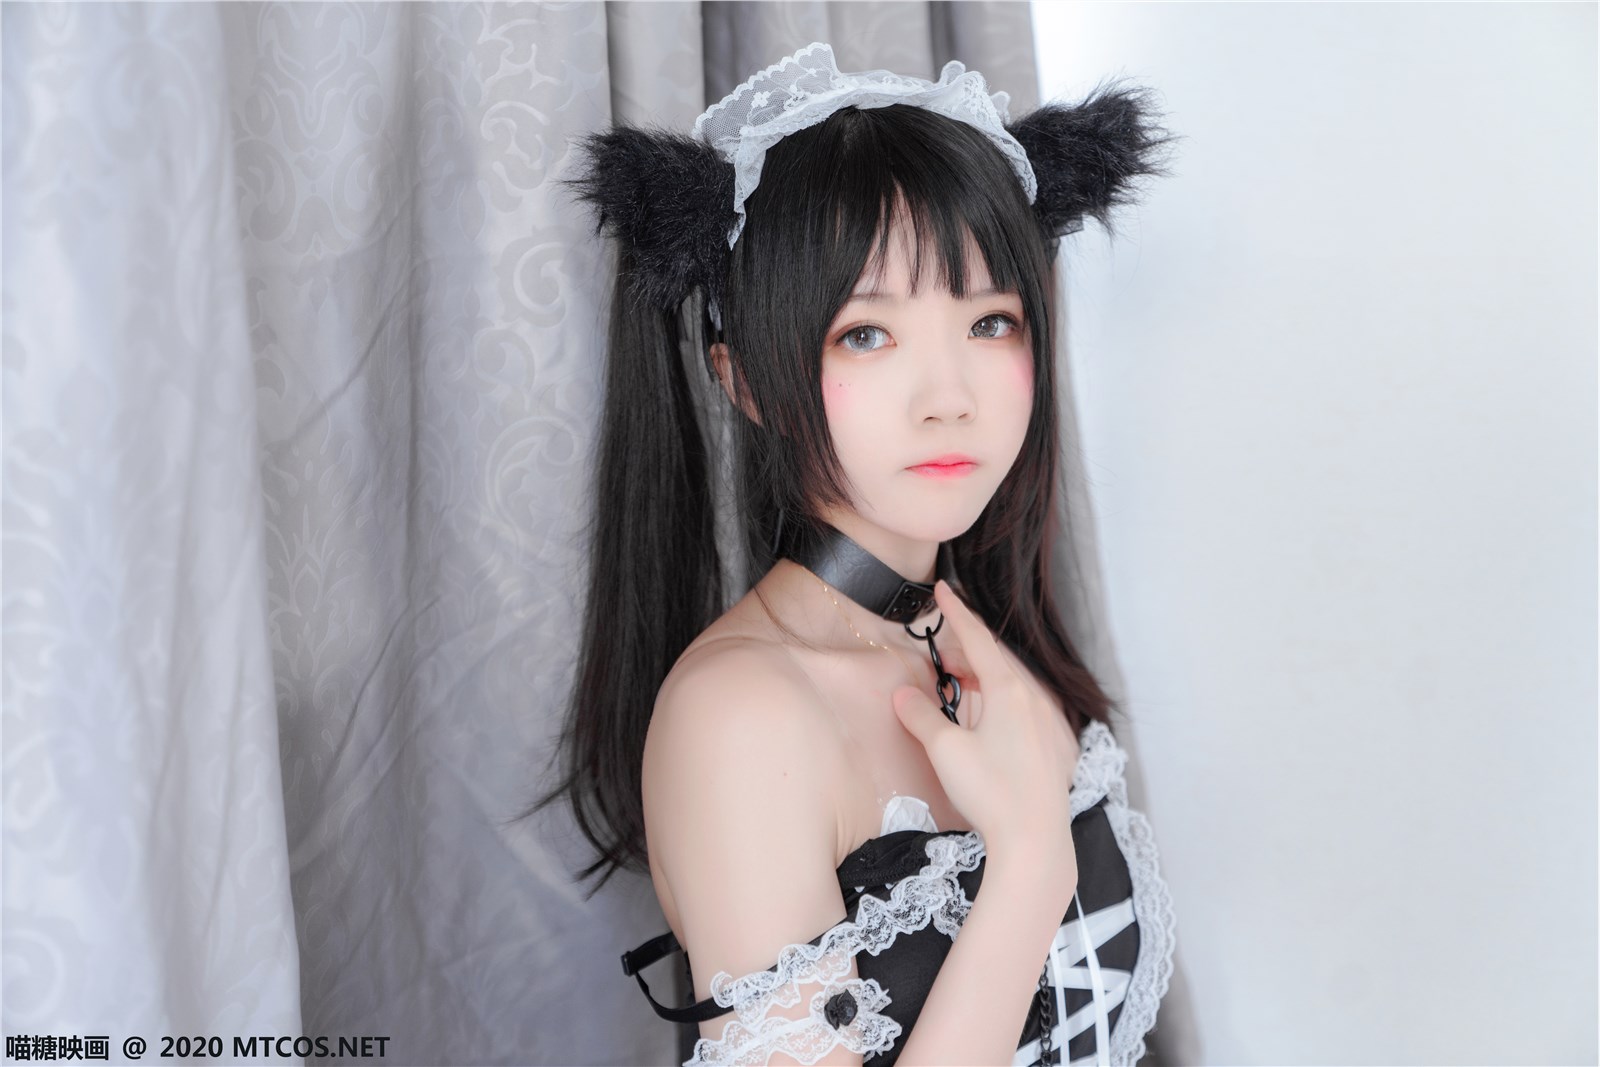 The black cat maid(2)